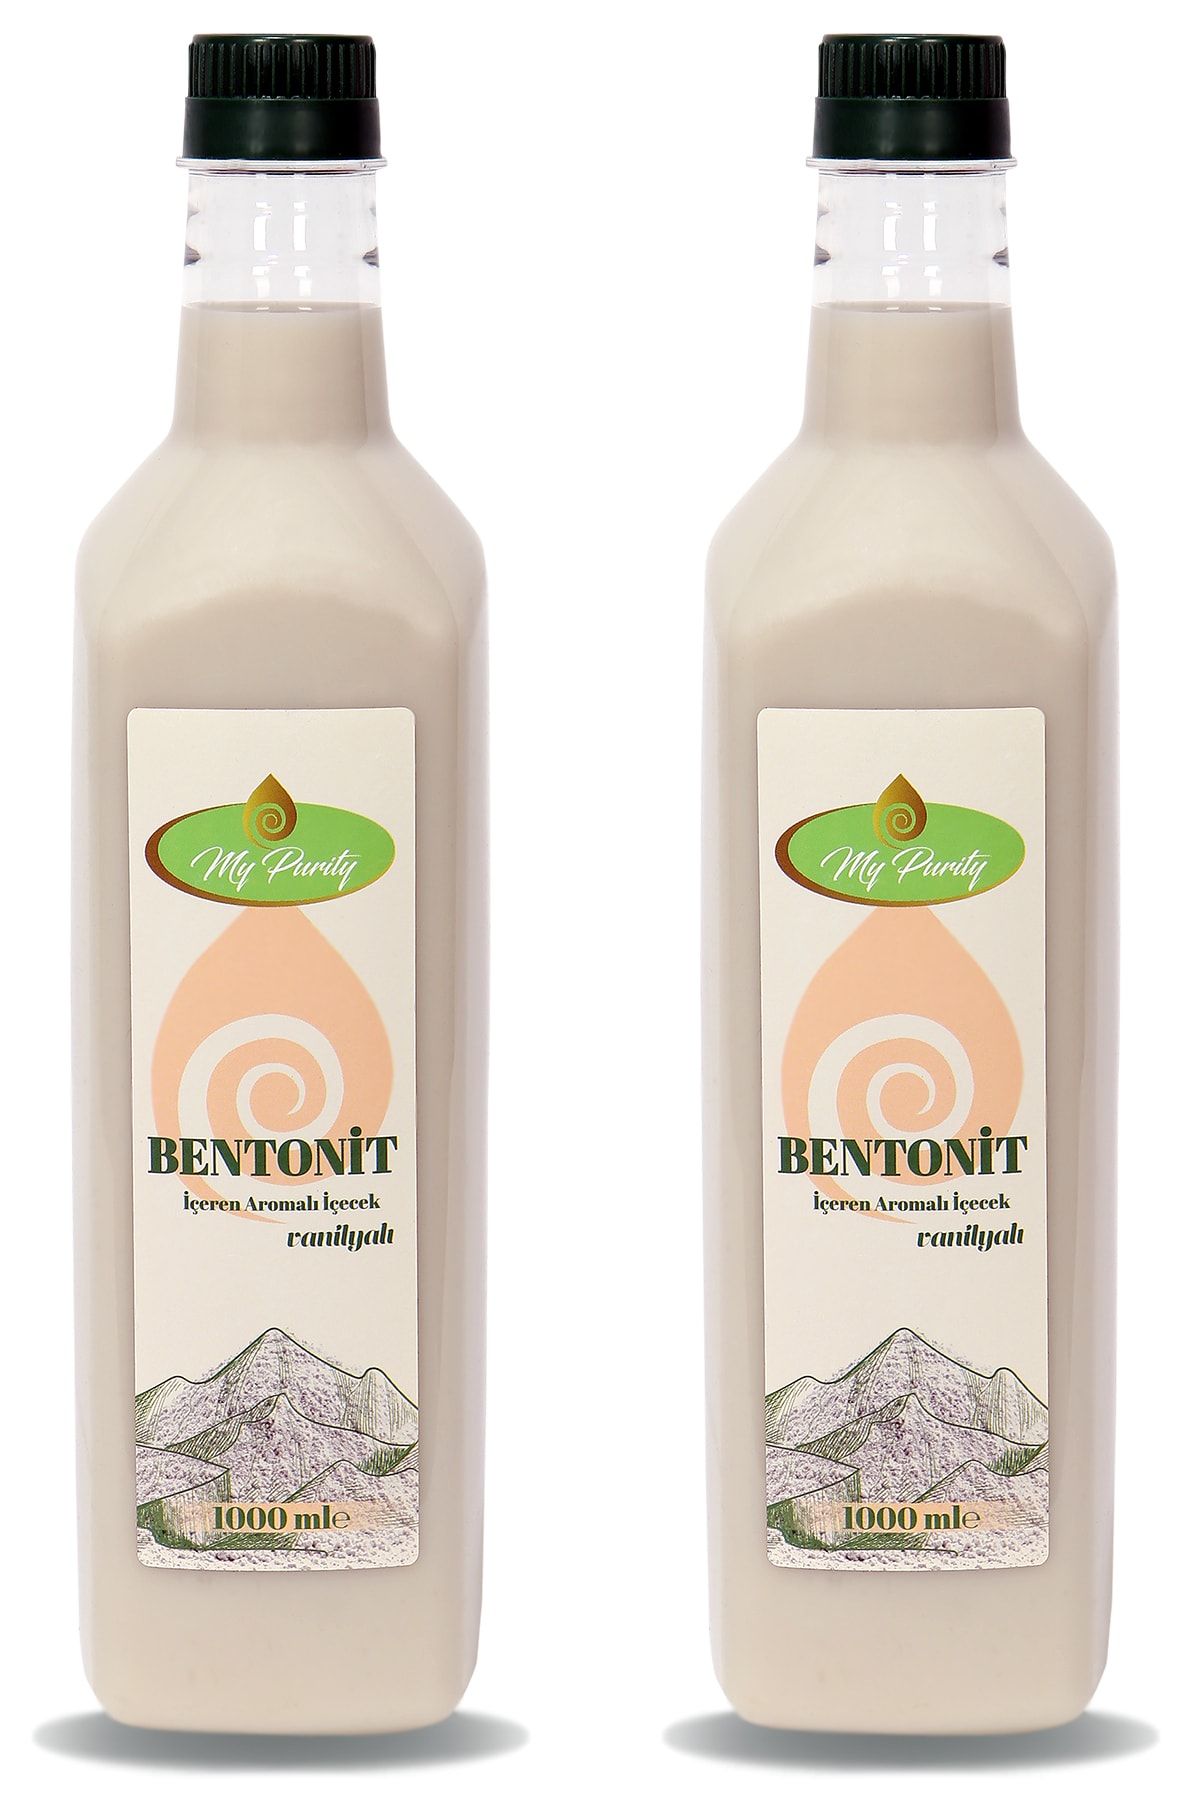 MyPurity Sıvı Bentonit Solüsyon - Içilebilir Bentonit Kili 2 Litre